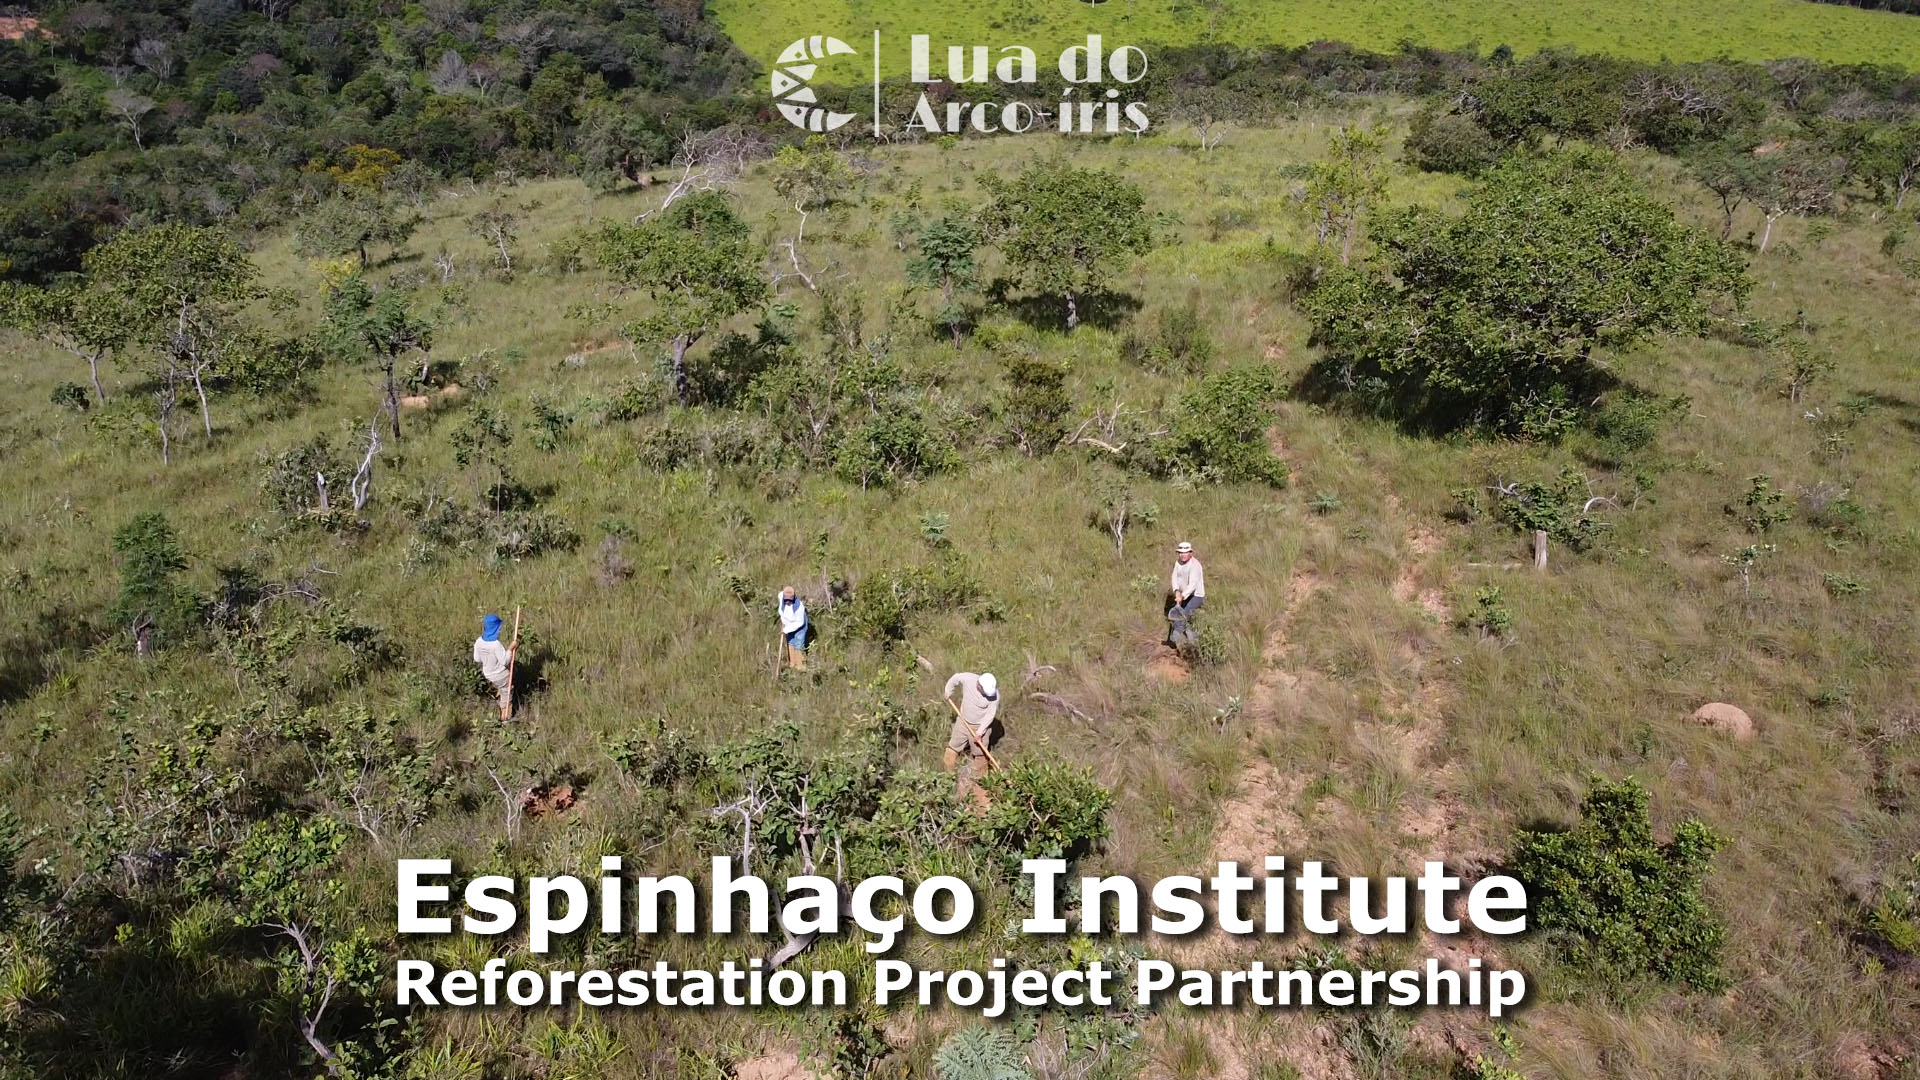 Espinhaço Institute team digging holes for trees